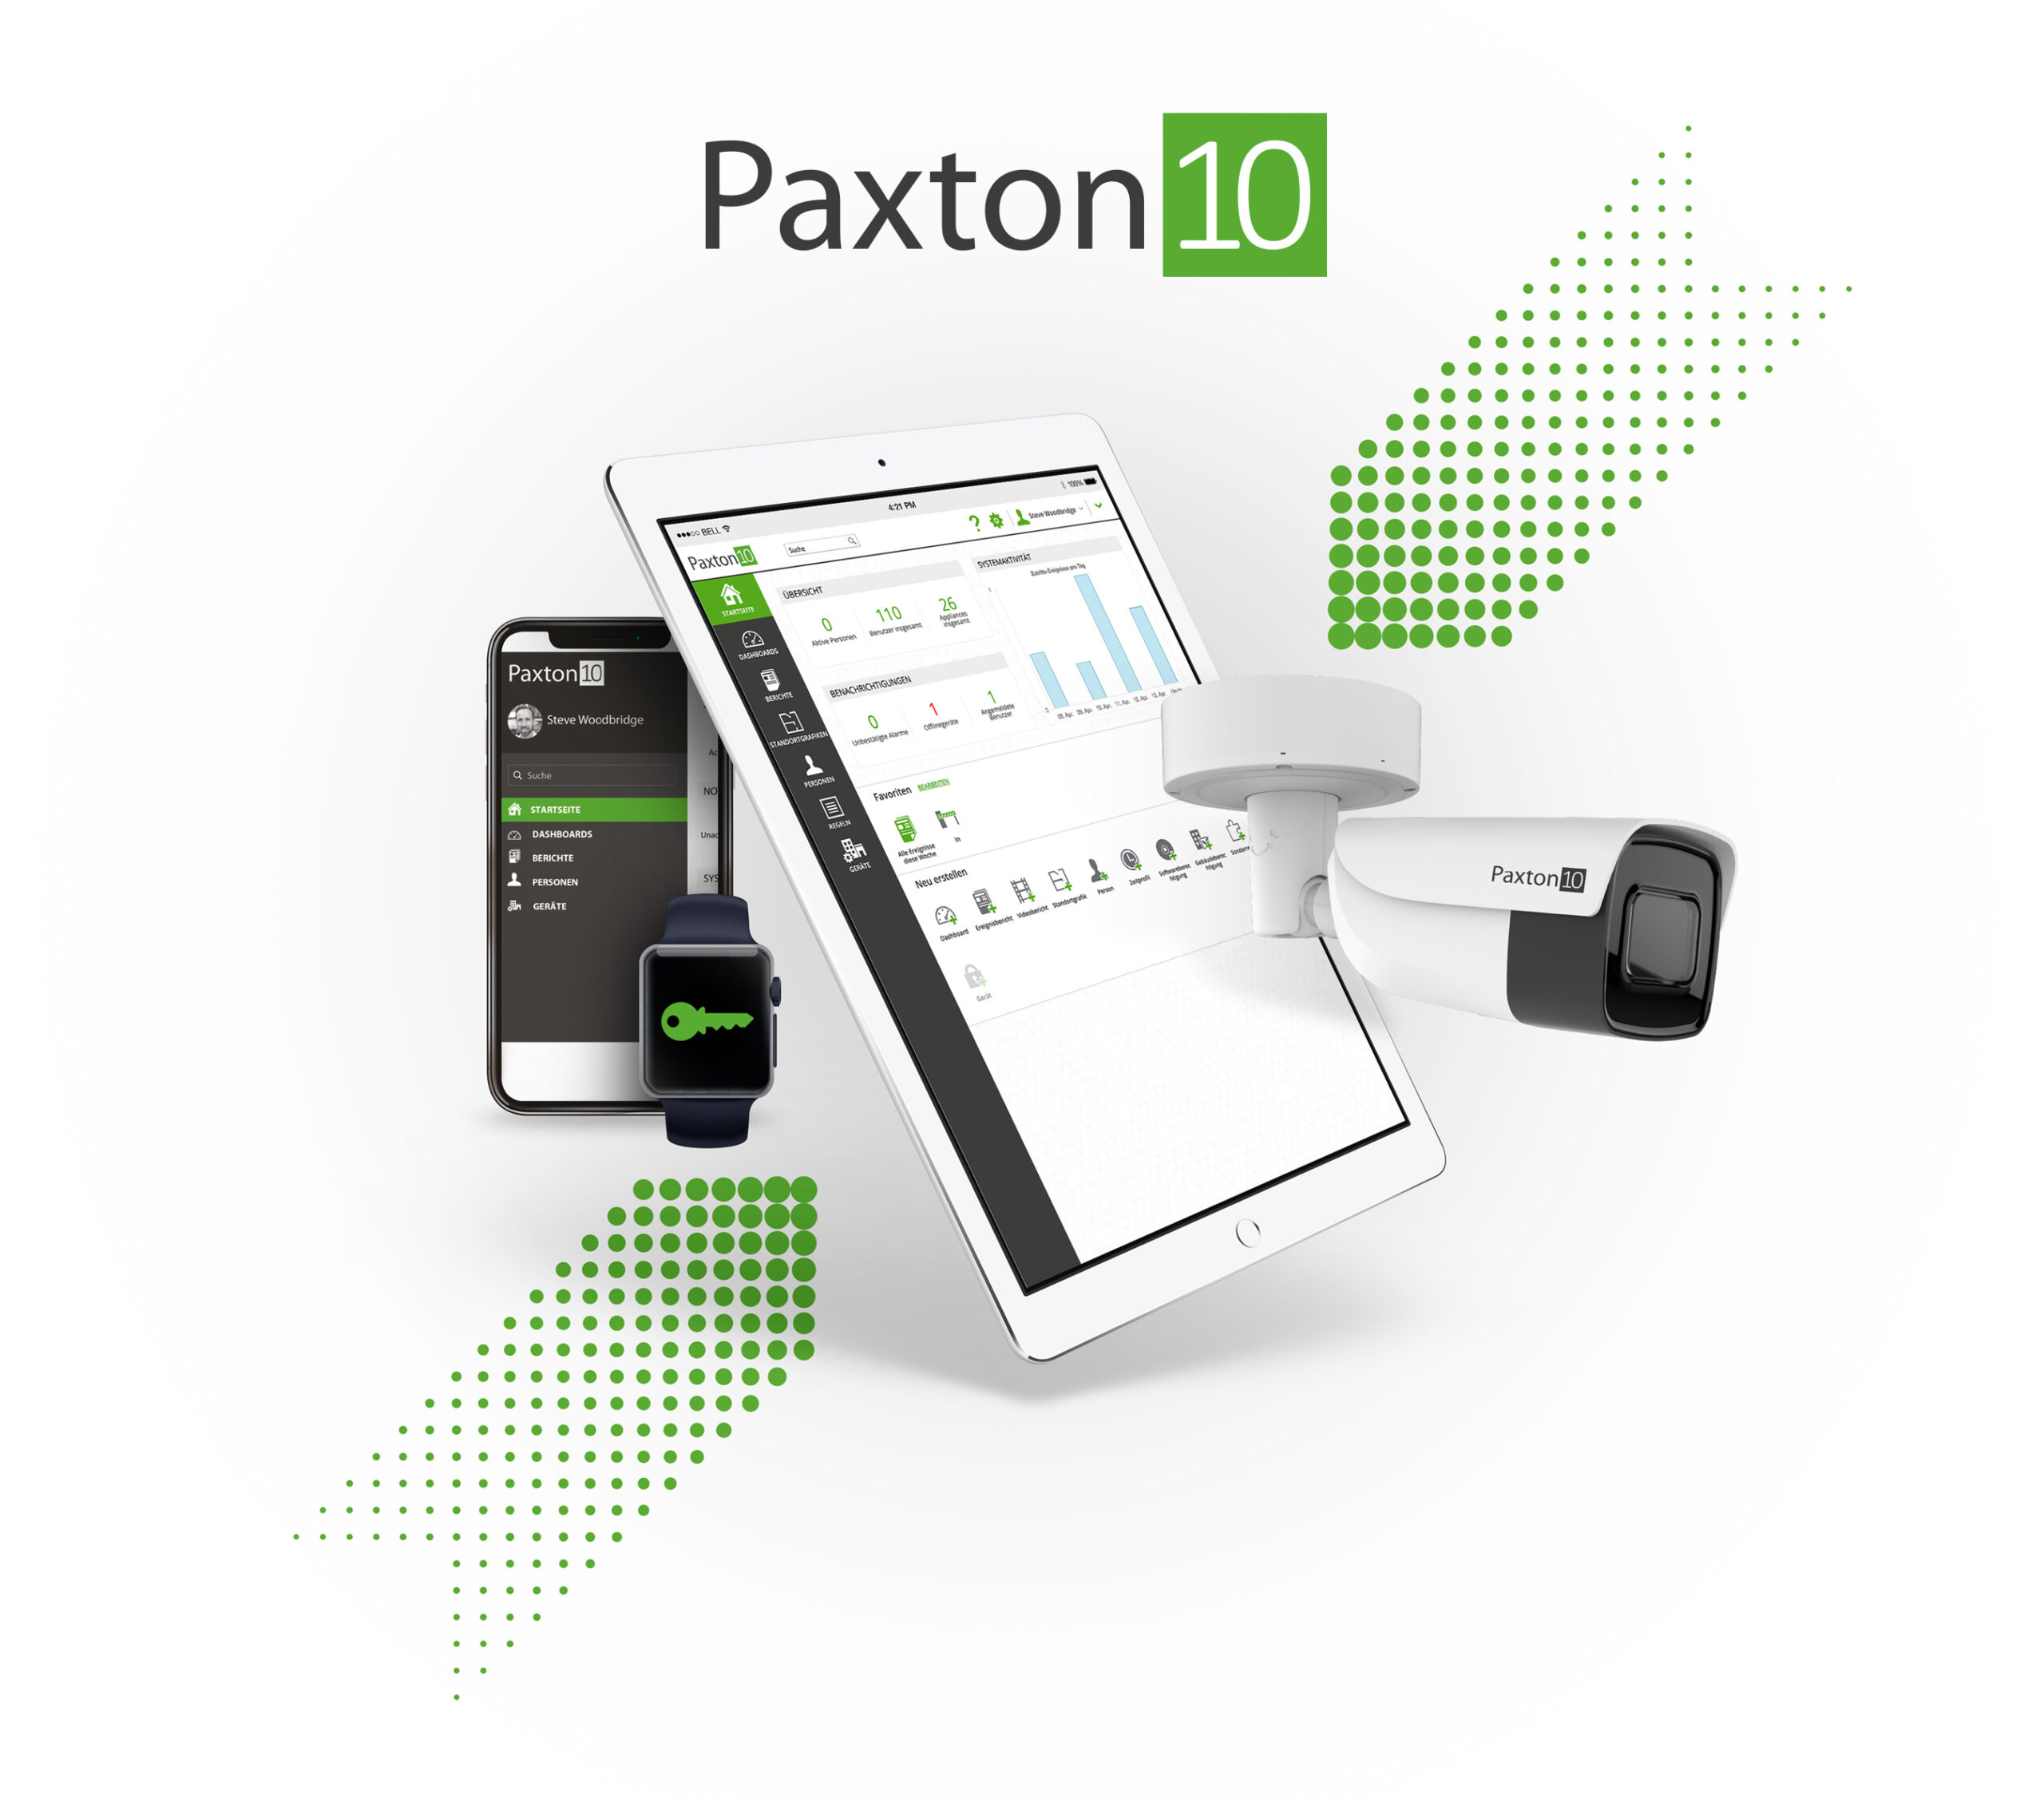 Paxton 10, das Zutrittskontroll- und Videomanagementsystem der nächsten Generation